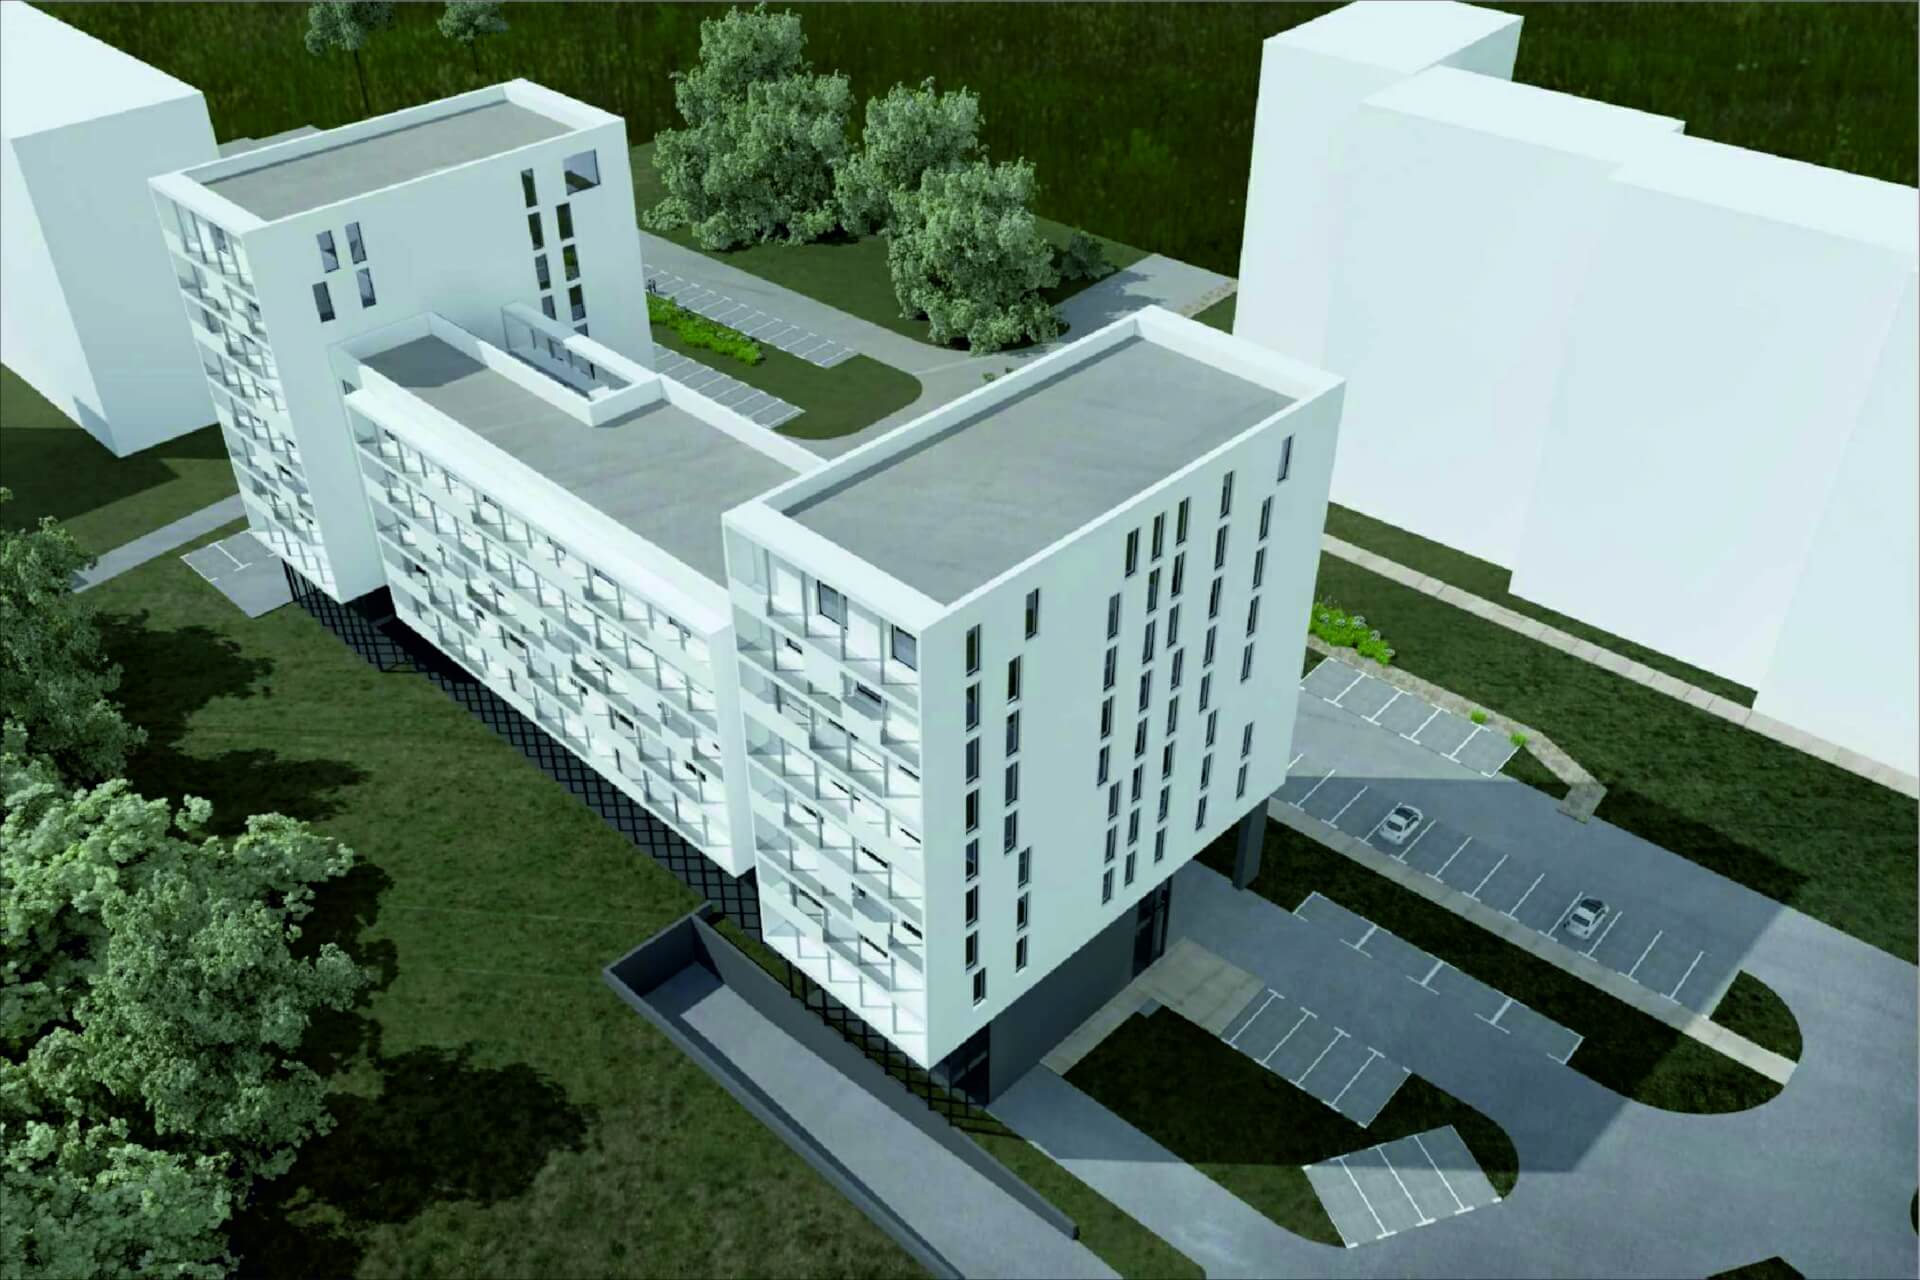 KTBS wizualizacja nowego budynku przy Kosstuha w Katowicach